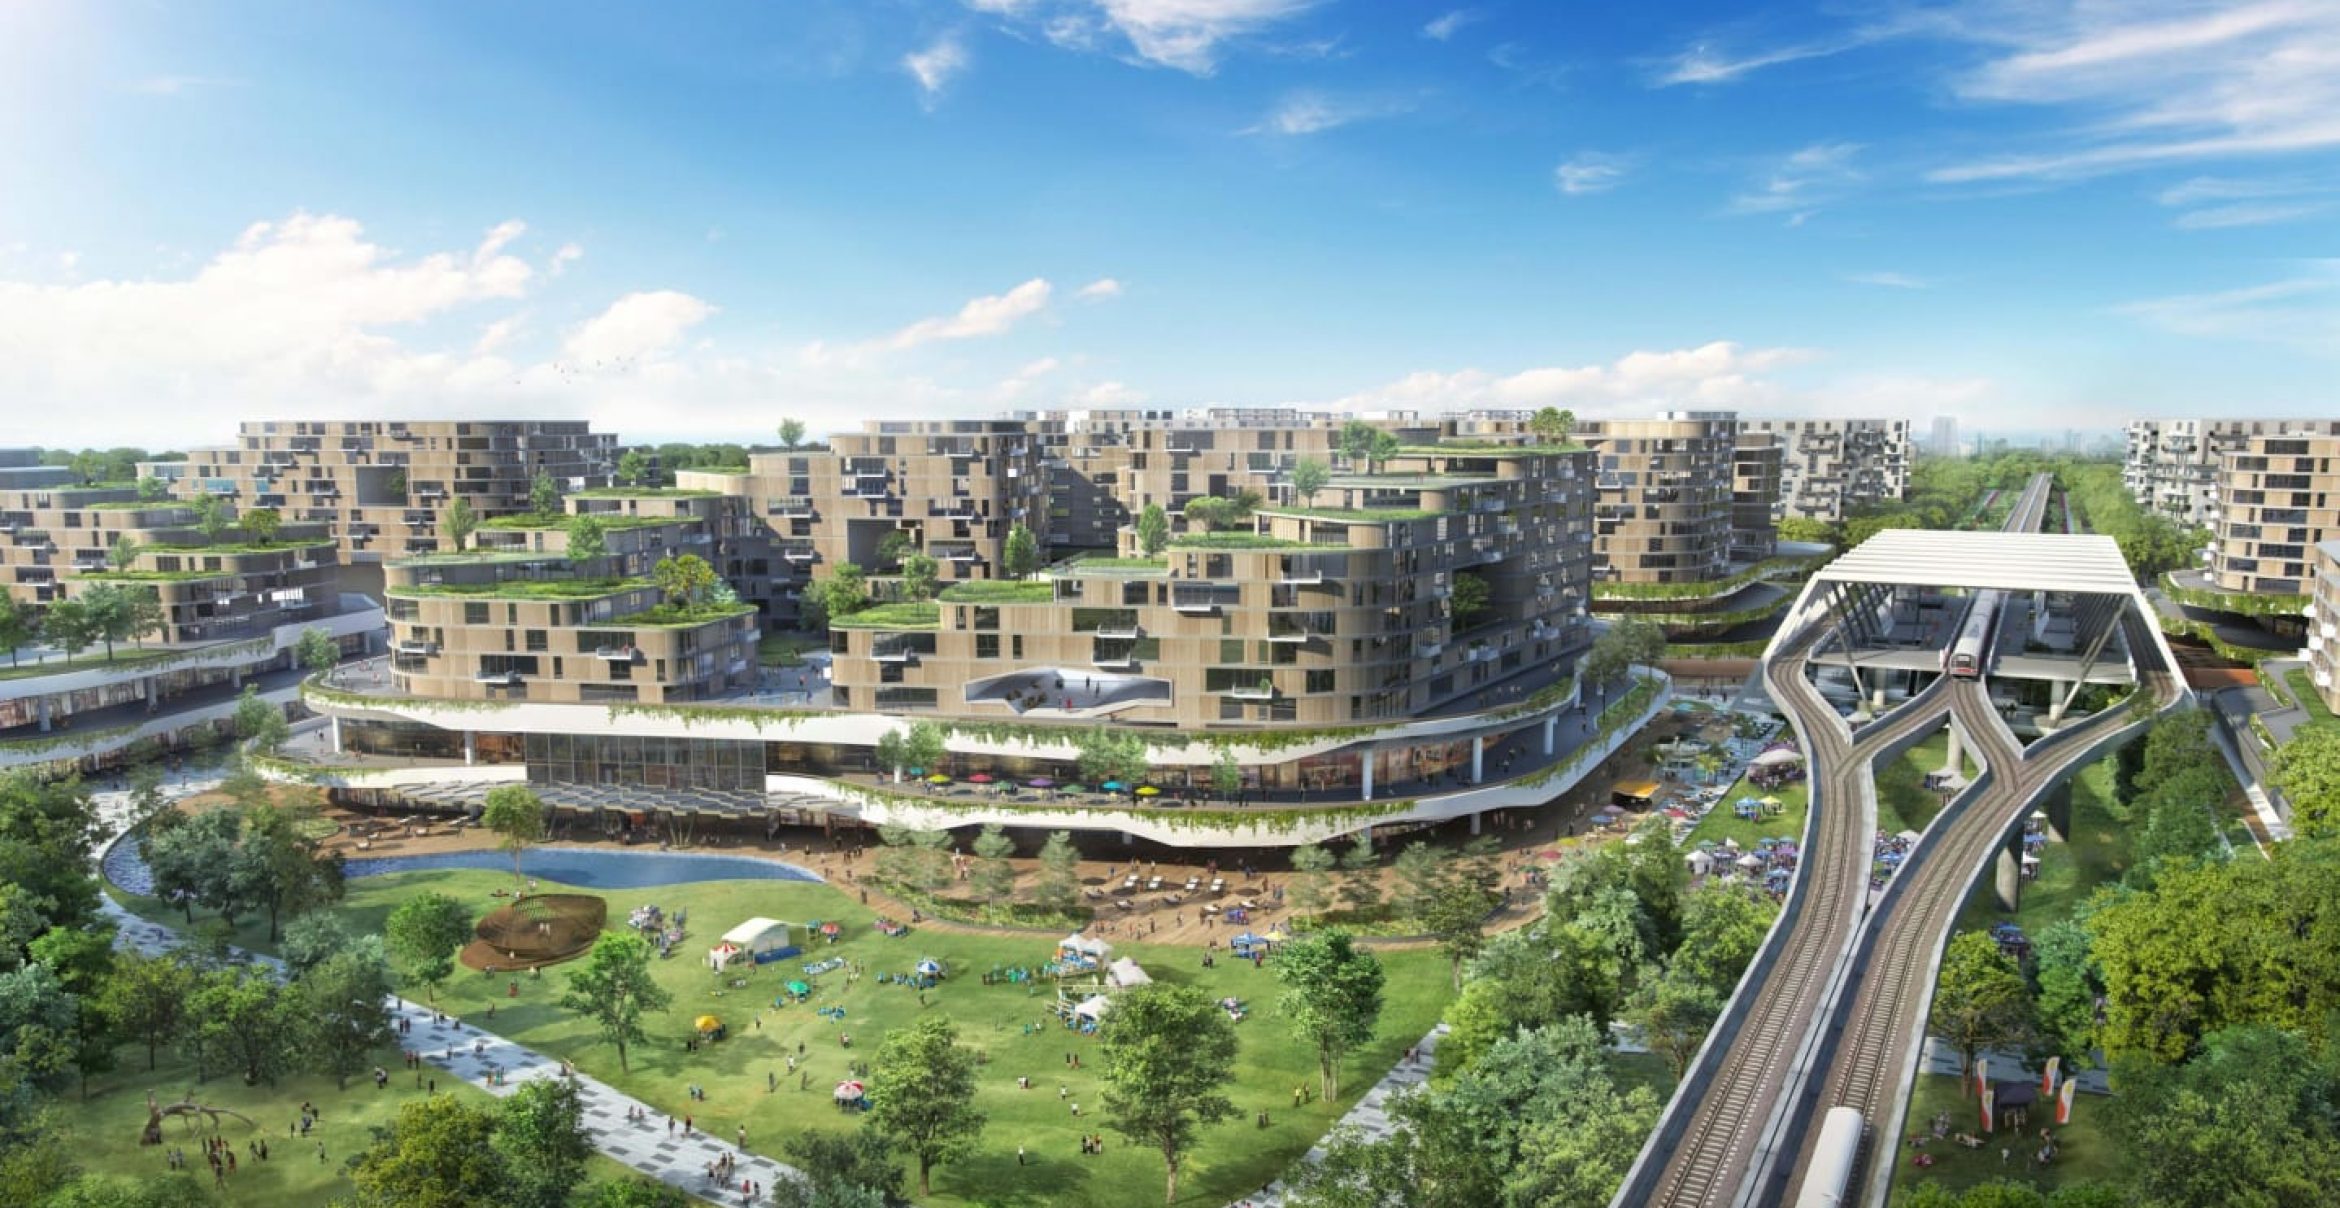 Singapur plant ersten smarten und umweltfreundlichen Wohnbezirk